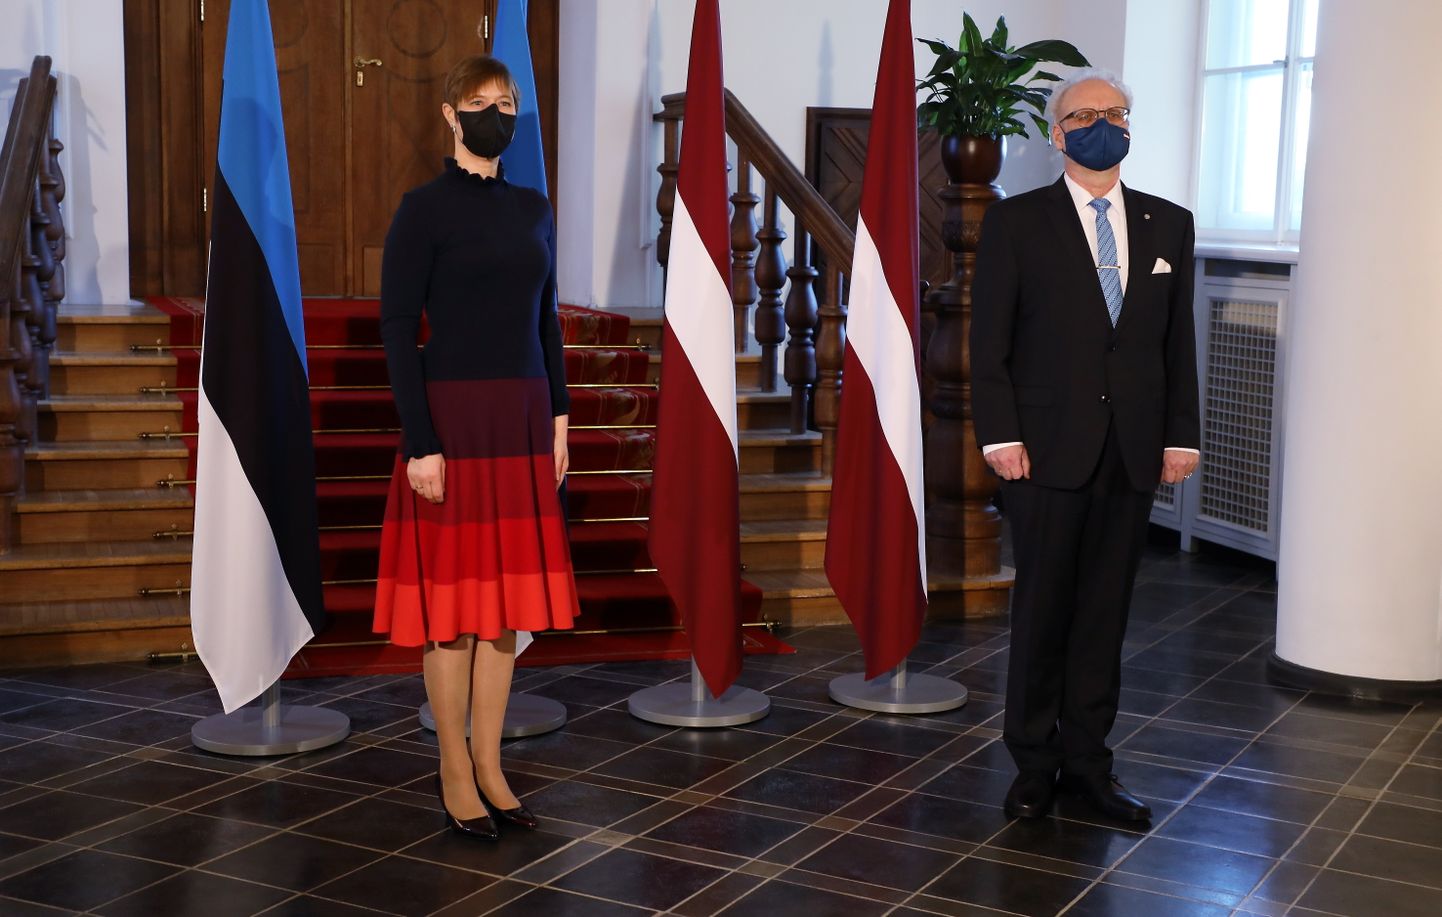 Valsts prezidents Egils Levits un Igaunijas prezidente Kersti Kaljulaida tikšanās laikā Rīgas pilī.